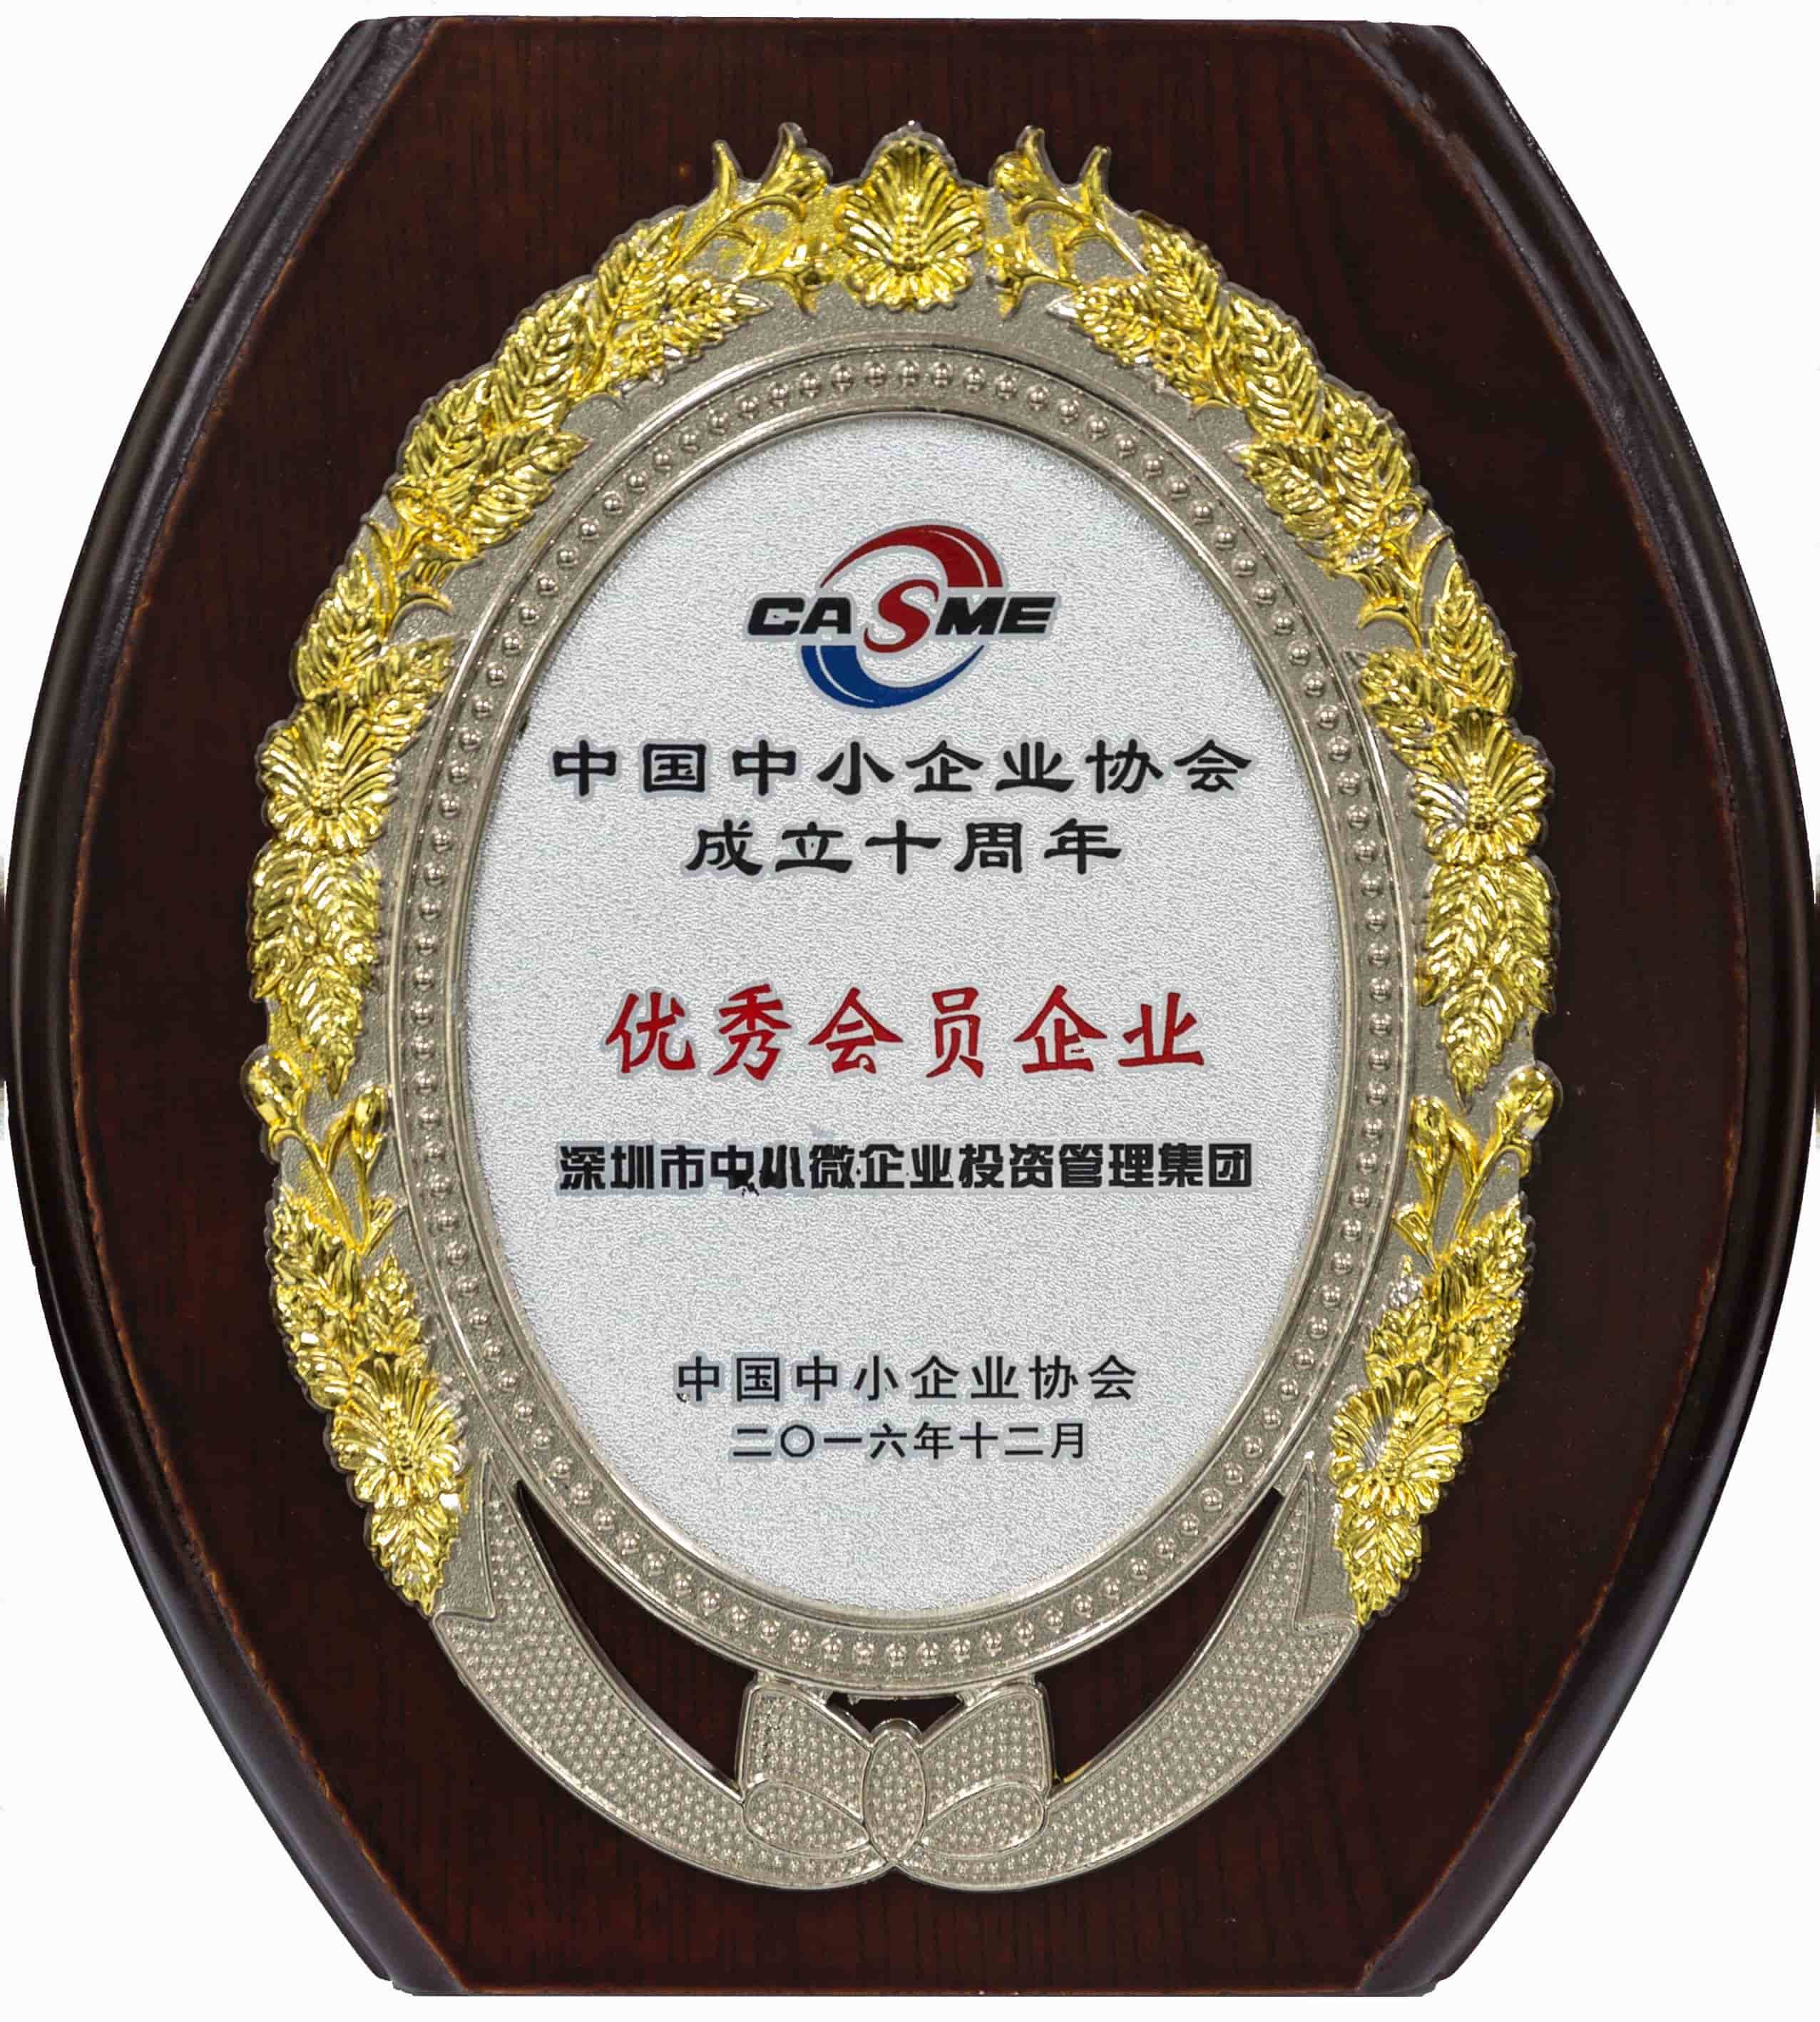 中国中小企业协会成立十周年优秀会员企业